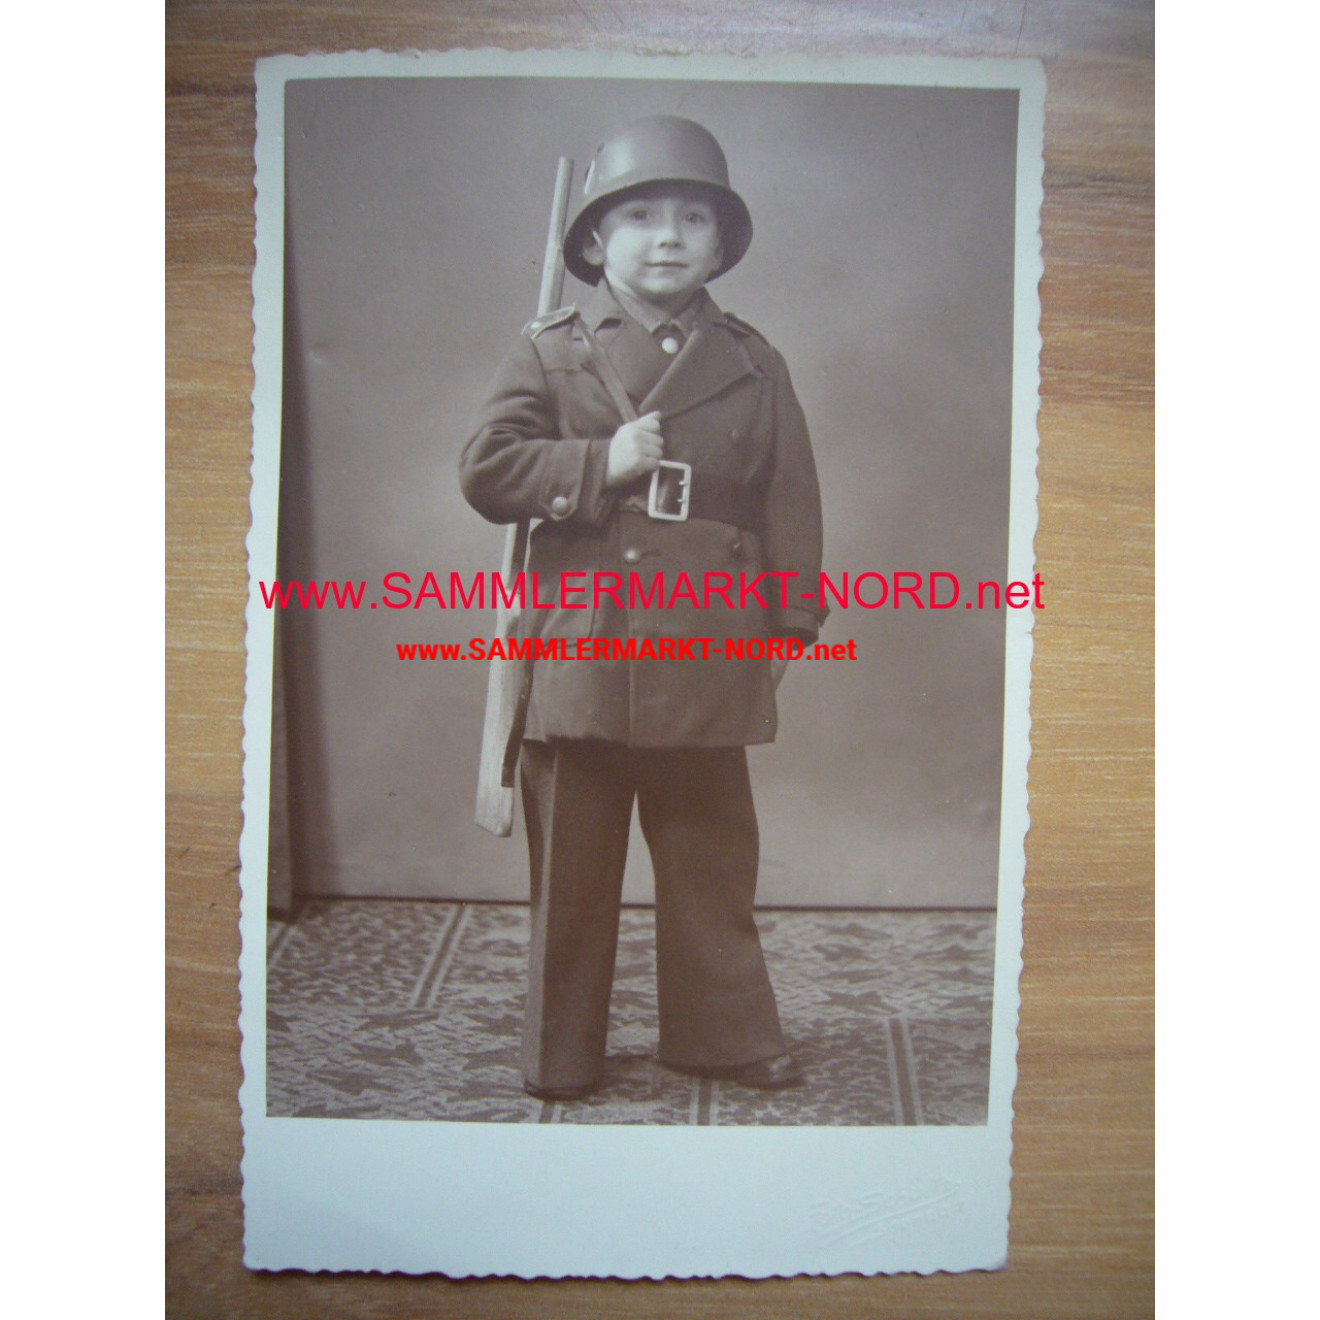 Boy in uniform of children with a steel helmet